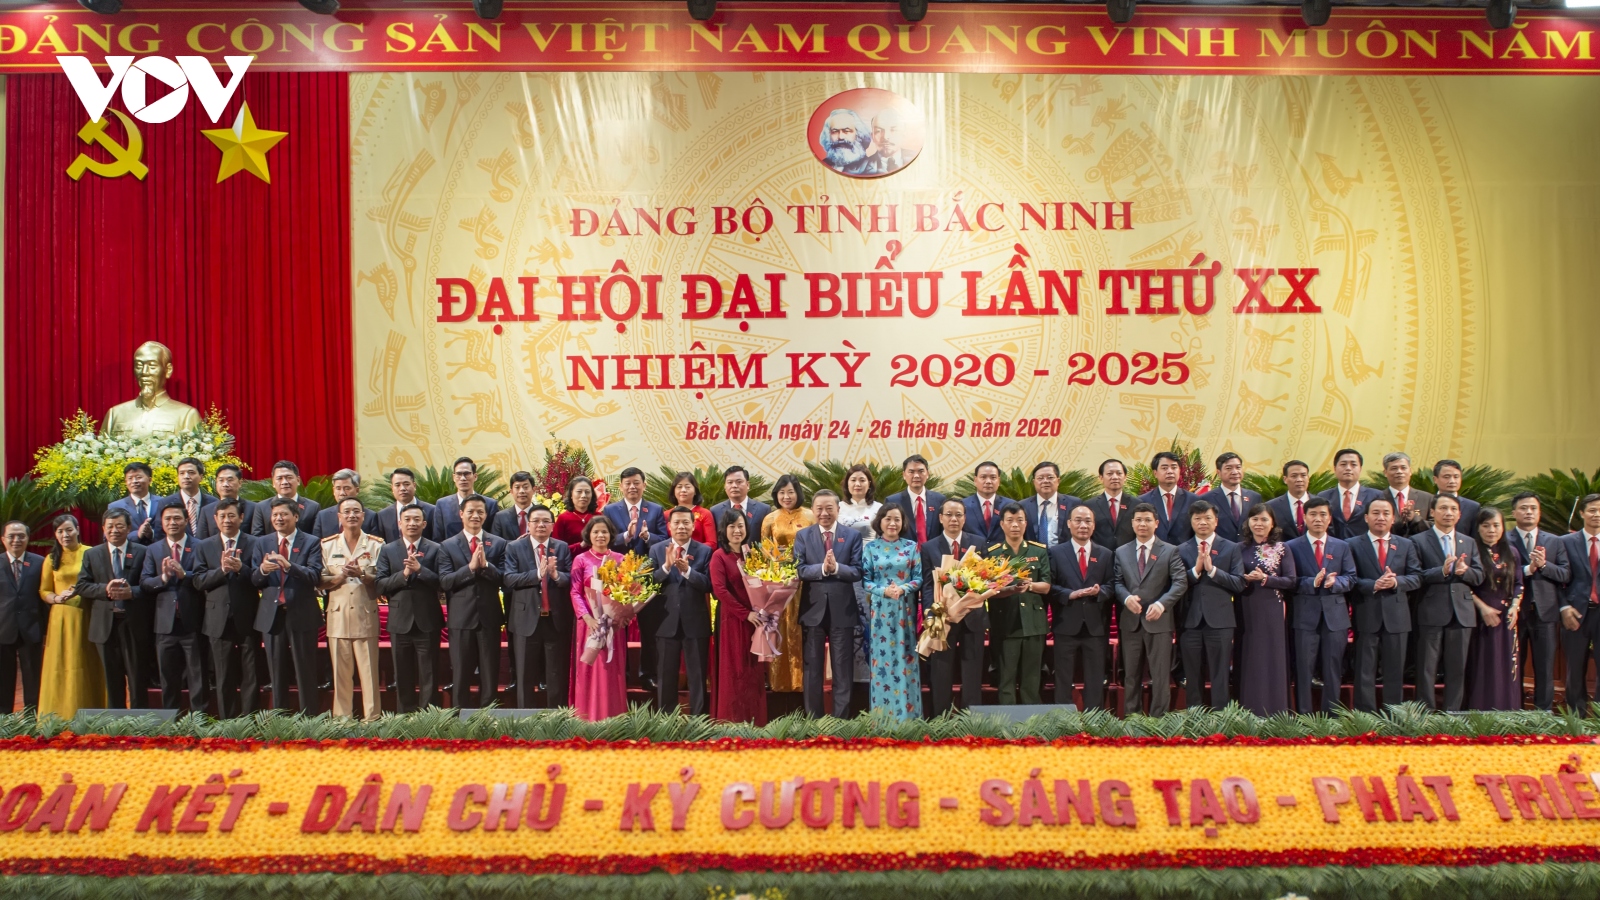 Toàn cảnh Đại hội Đảng bộ tỉnh Bắc Ninh lần thứ XX